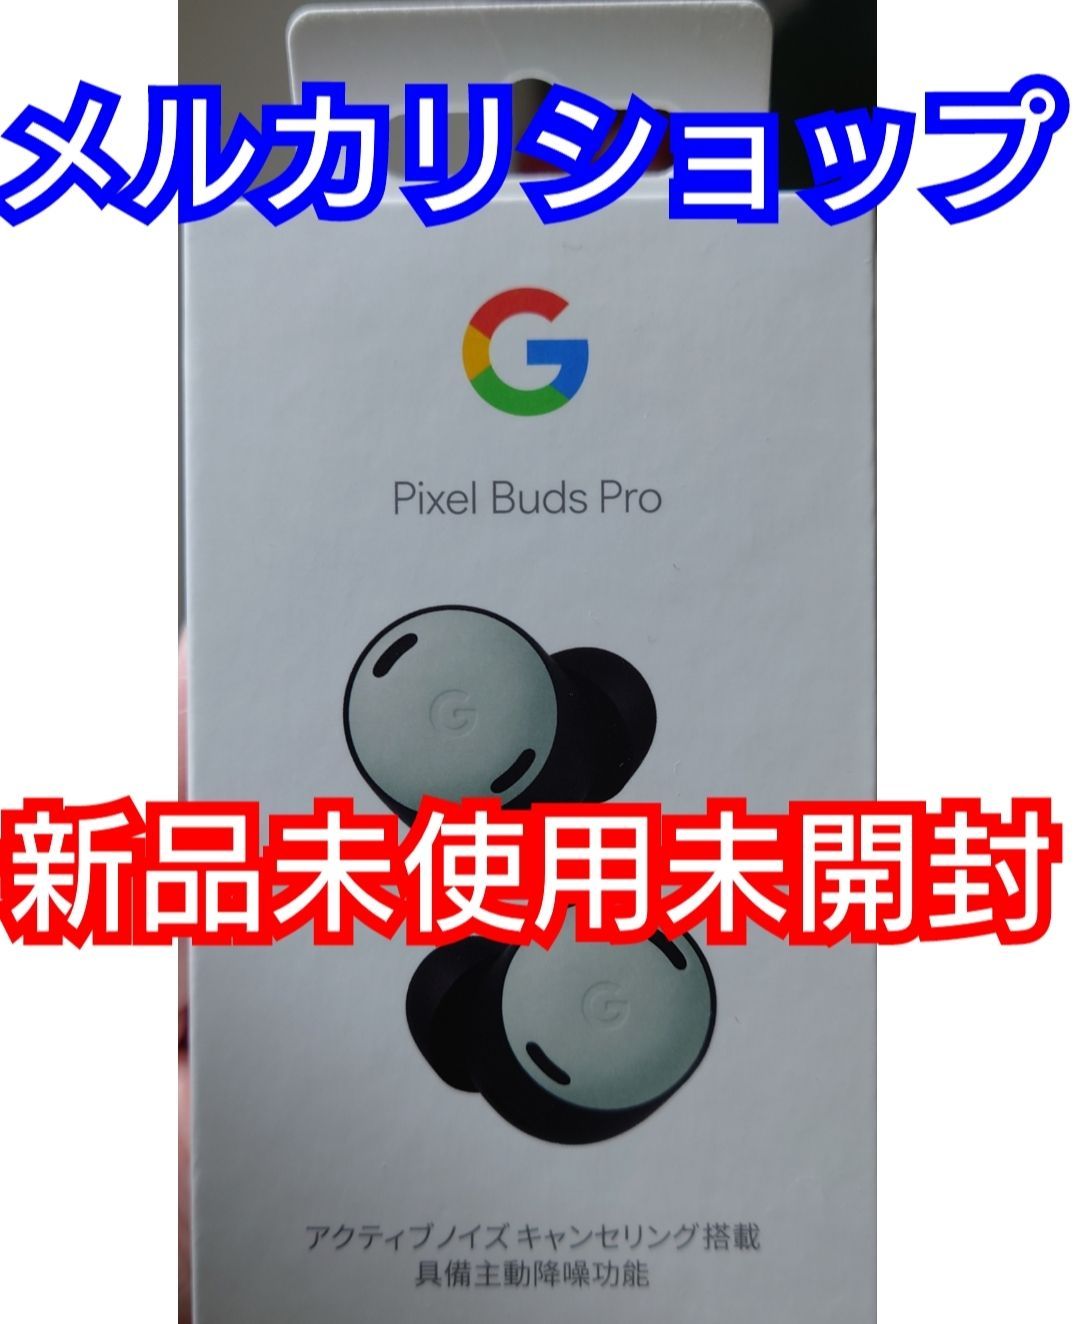 新品未使用Google Pixel Buds Proご検討よろしくお願いいたします